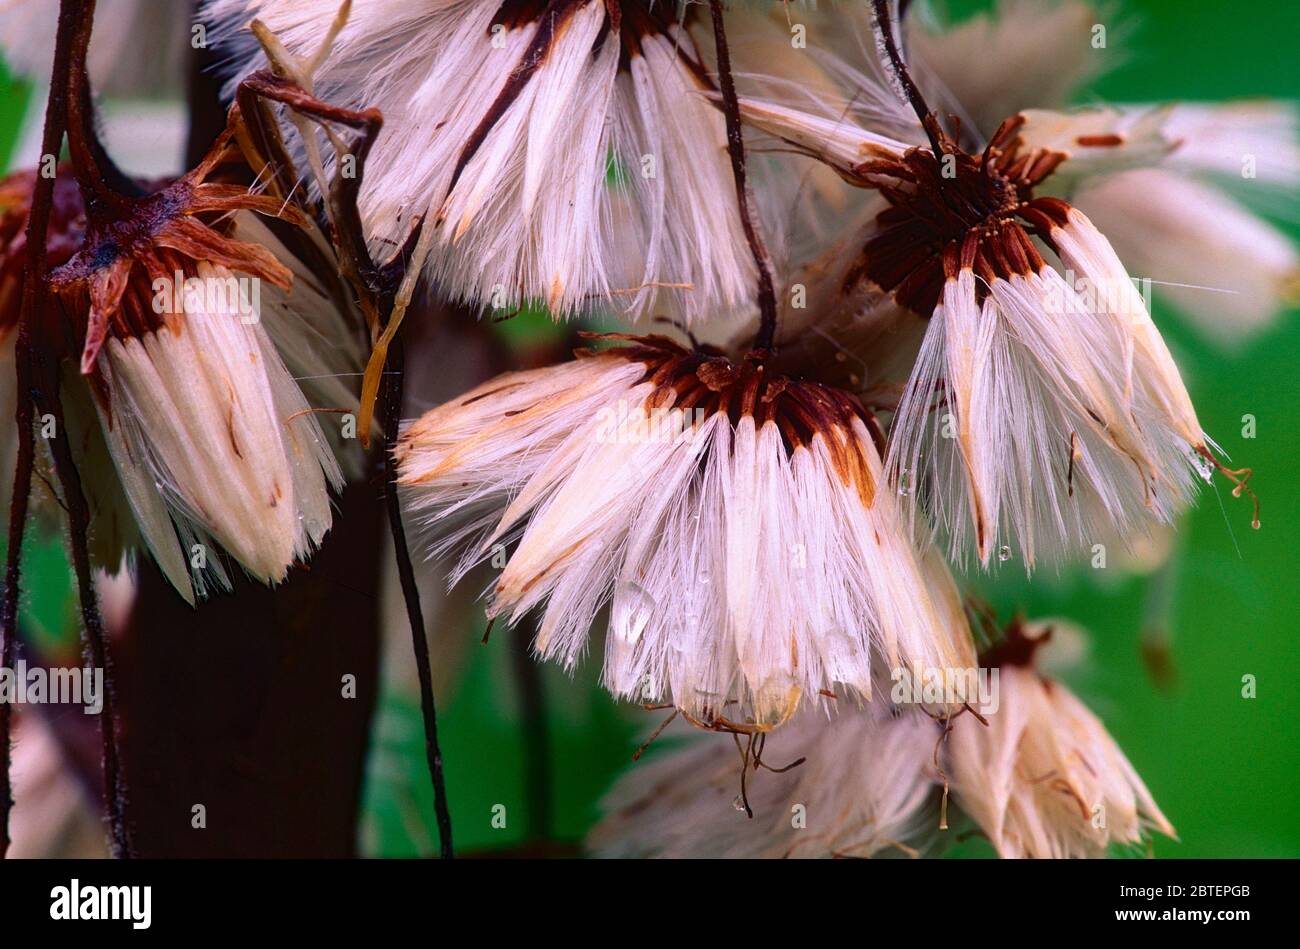 Búterbur blanco, Petasites albus, Rosaceae, semillas, flor, planta, Cantón de San Gallen, Suiza Foto de stock